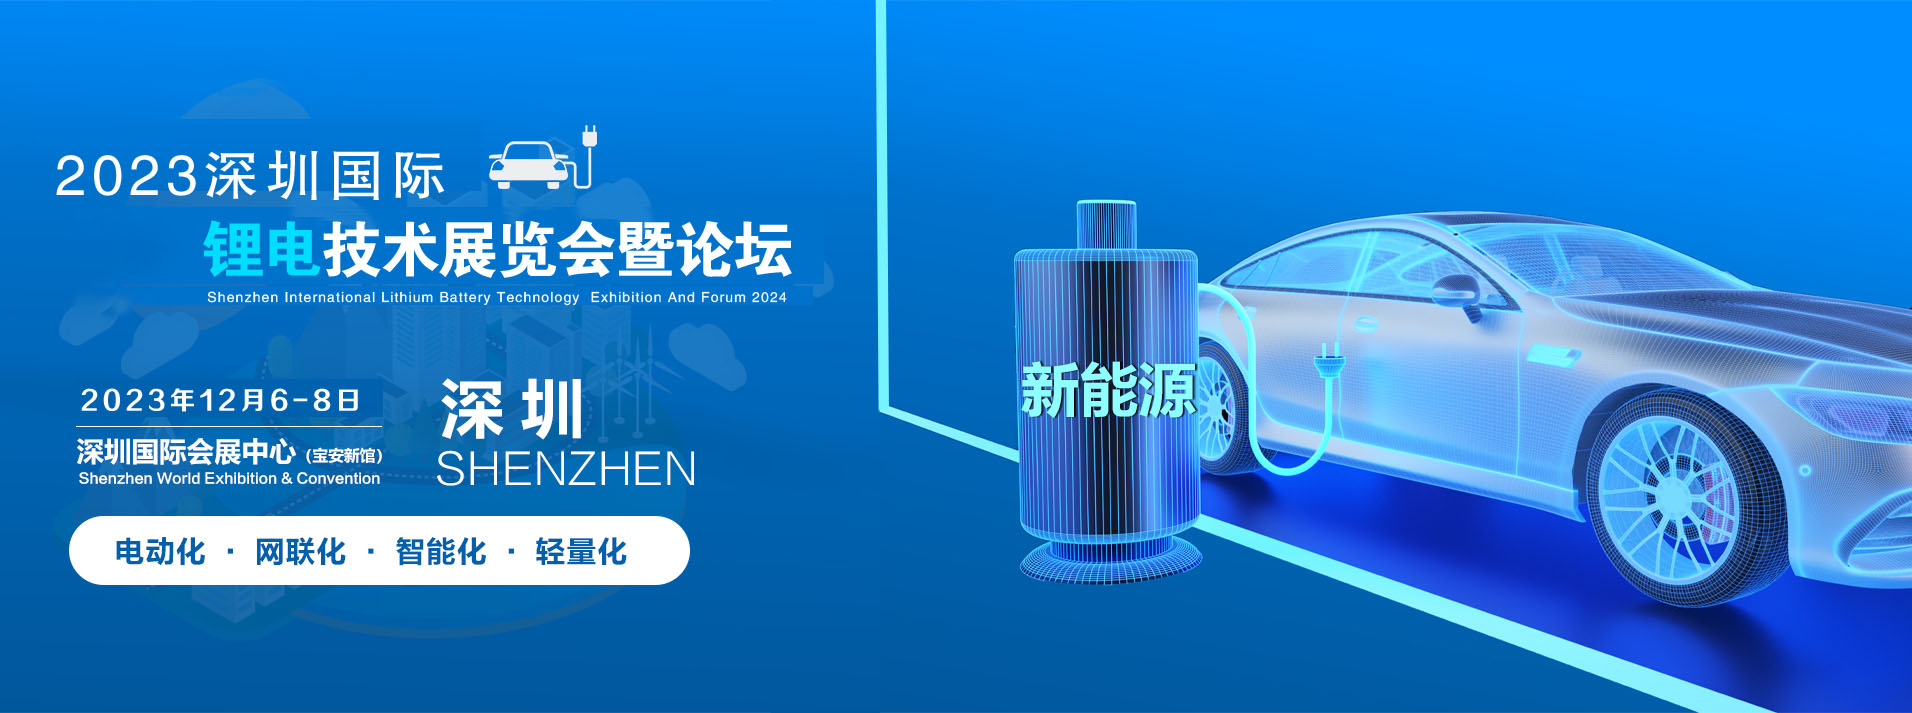 2022深圳锂电池技术展览会 籍大湾区优势塑品牌展会 